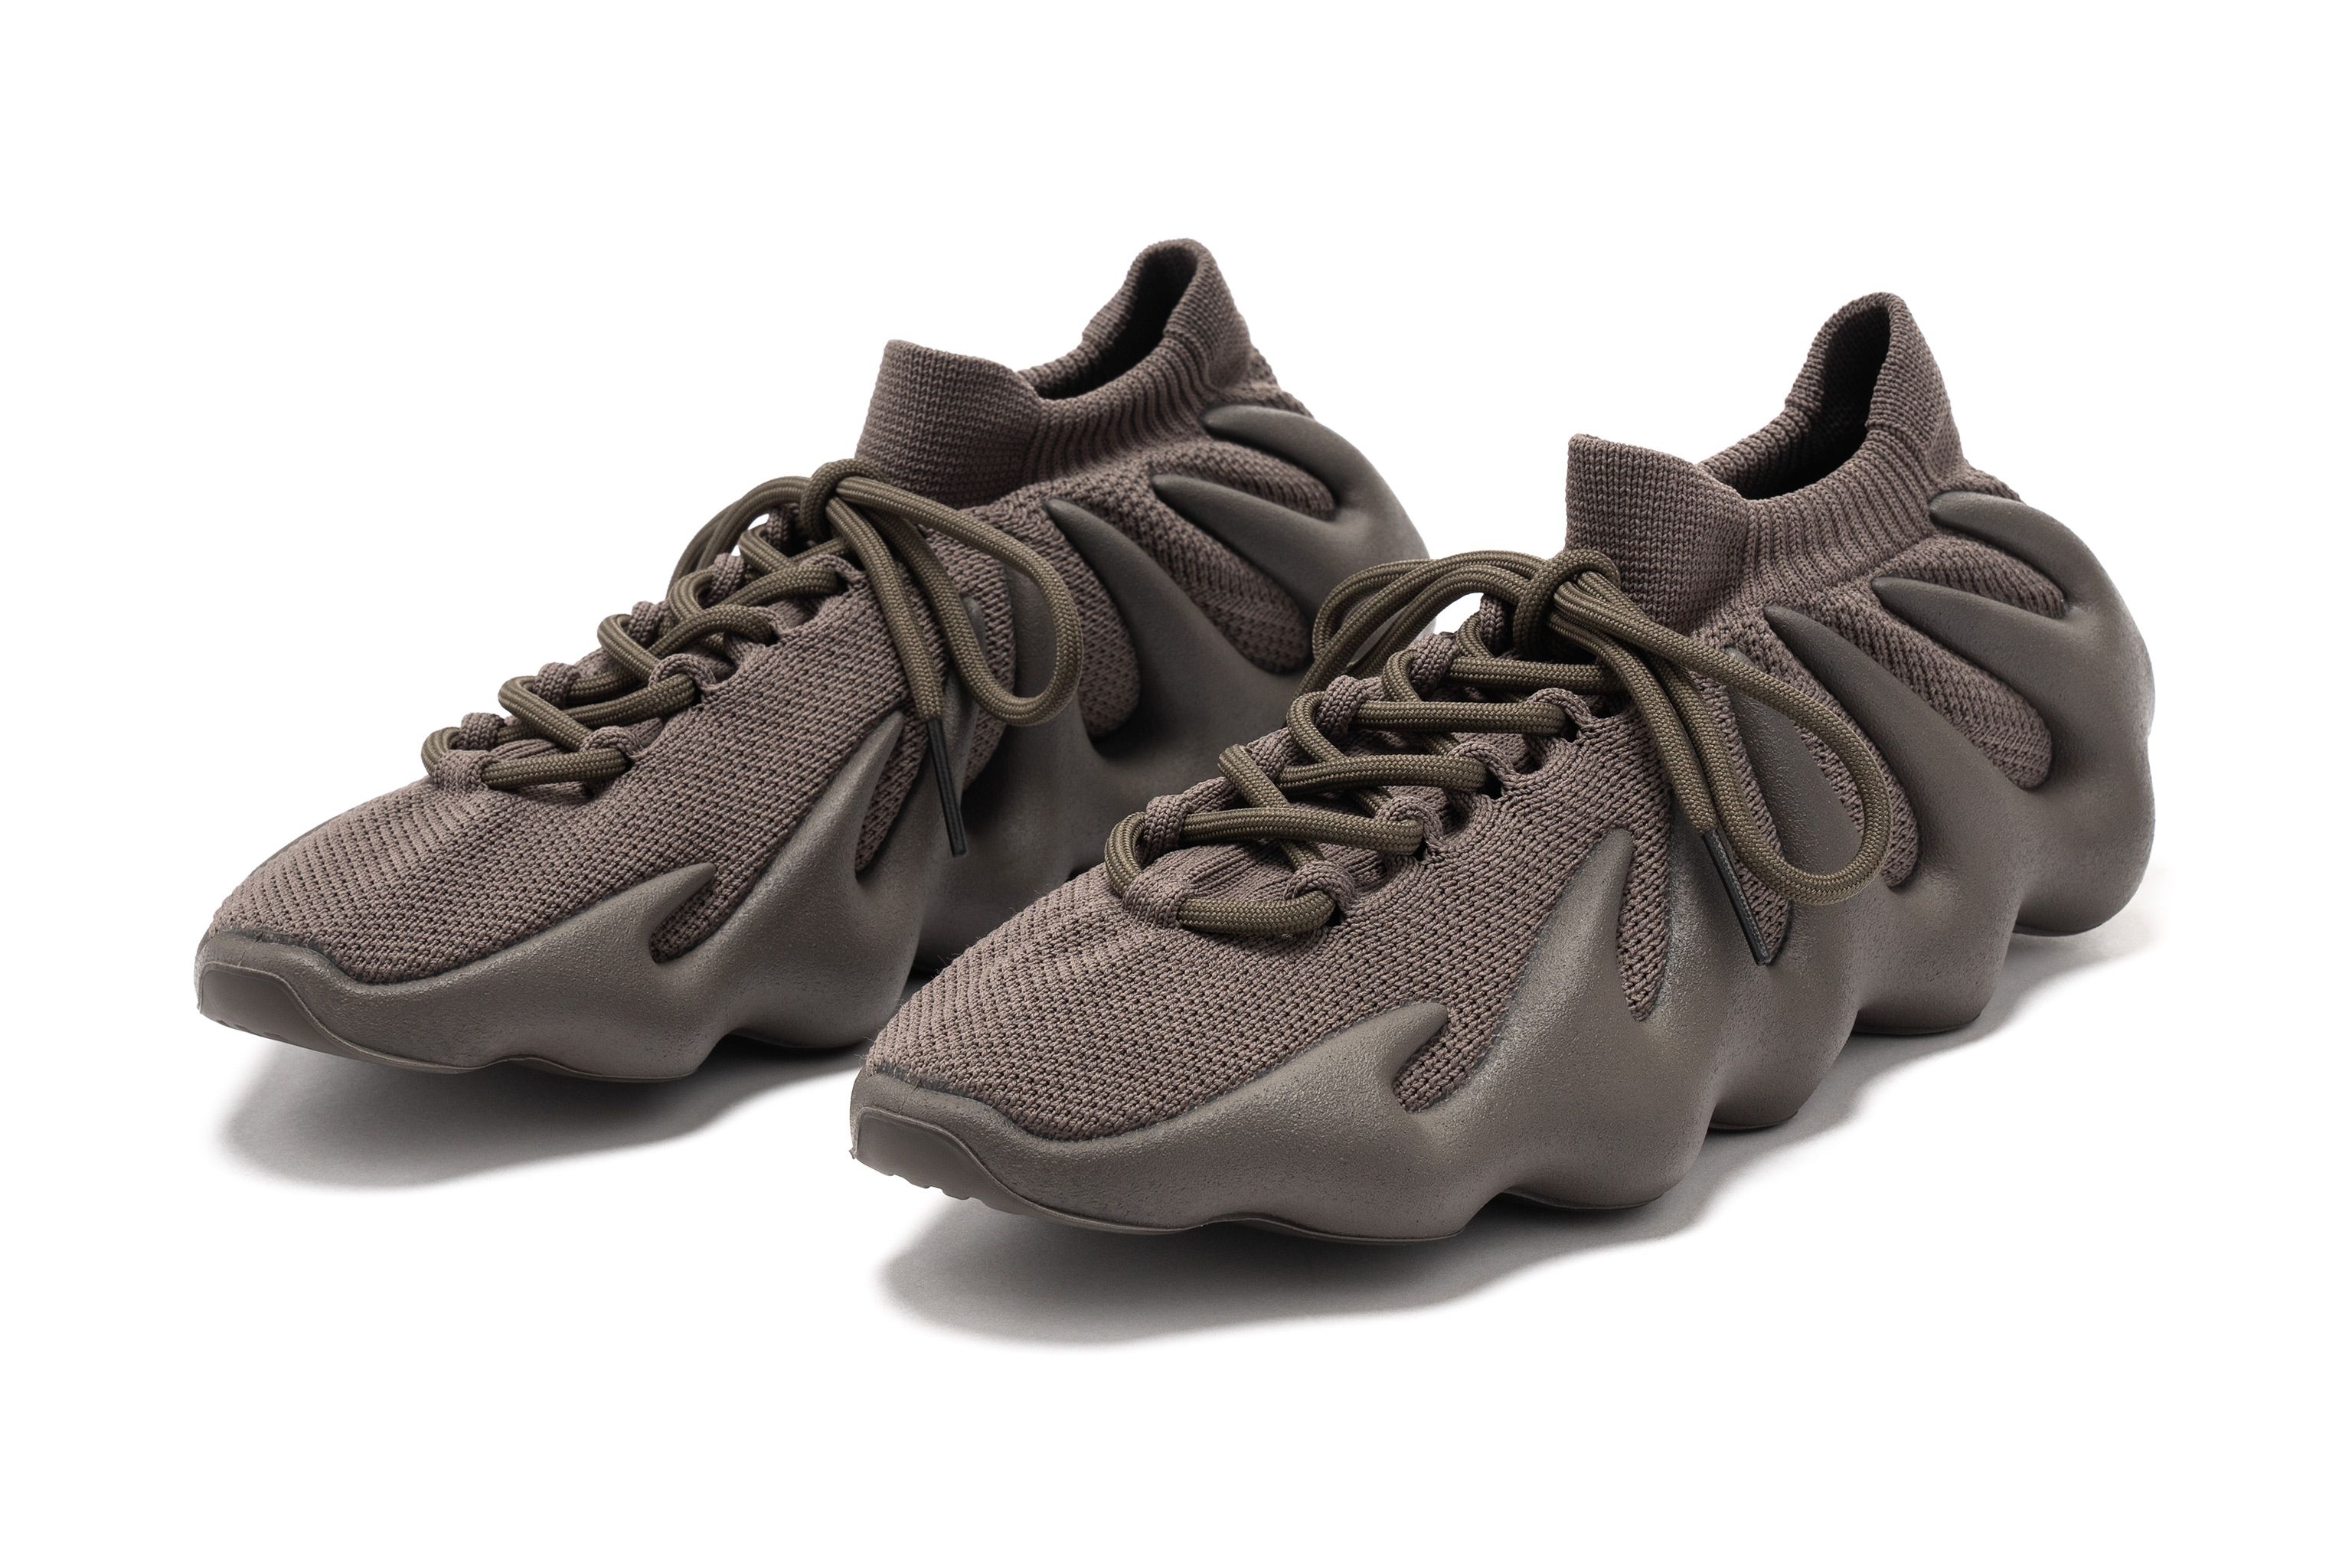 adidas Yeezy 450 'Cinder' Release Date: 03.24.22 | HAVEN